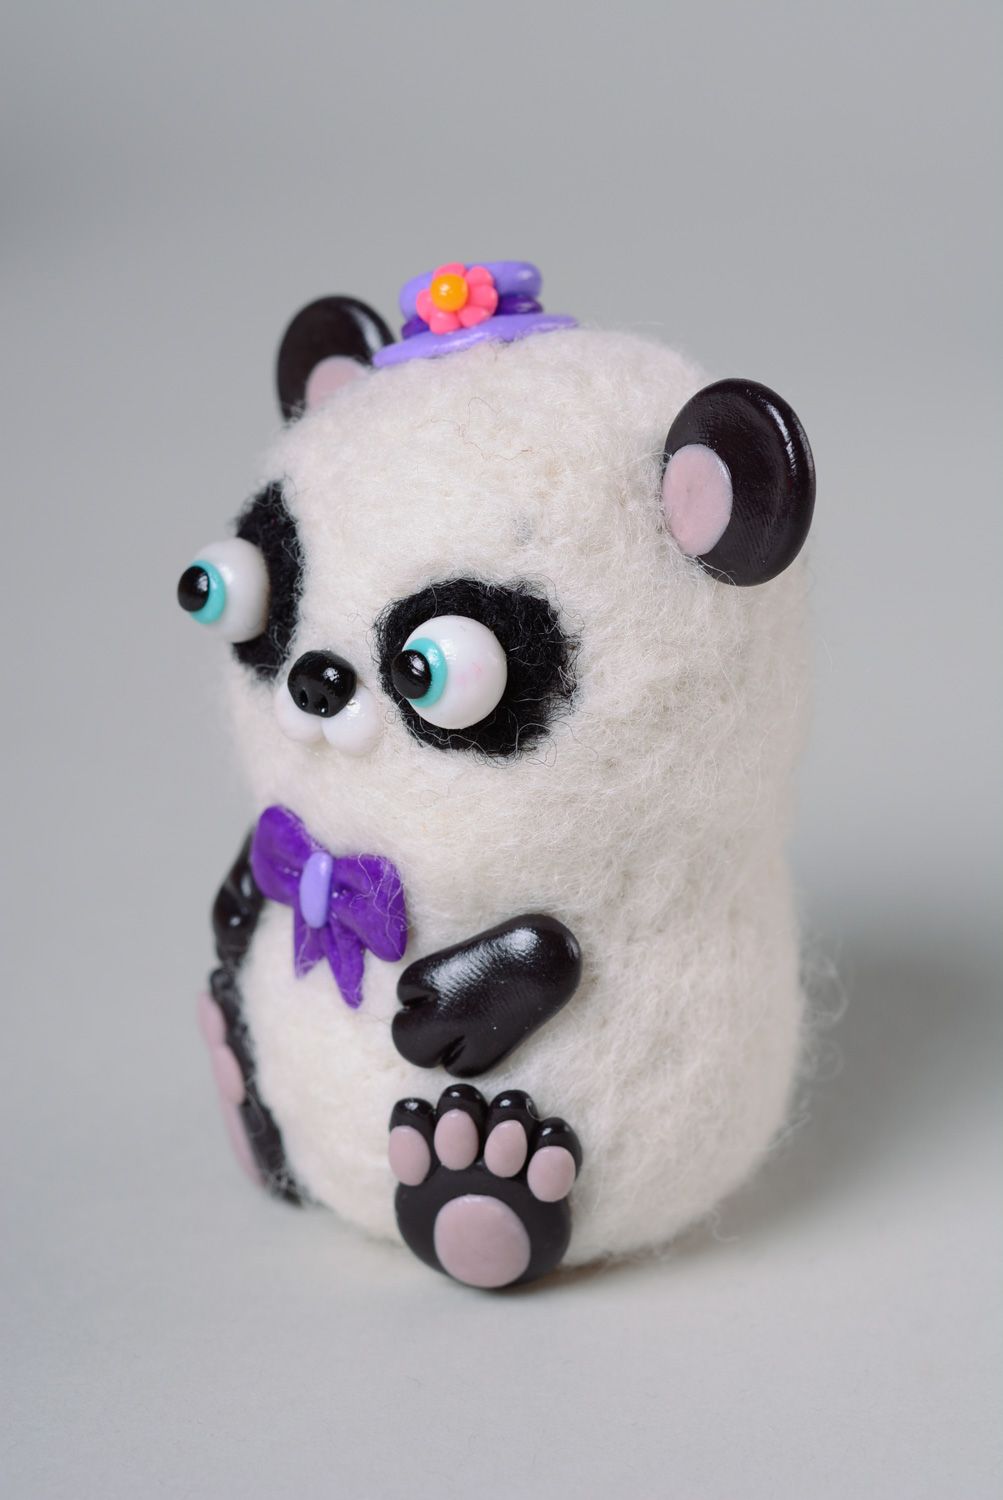 Jouet de poche fait main original en laine technique de feutrage Panda photo 2